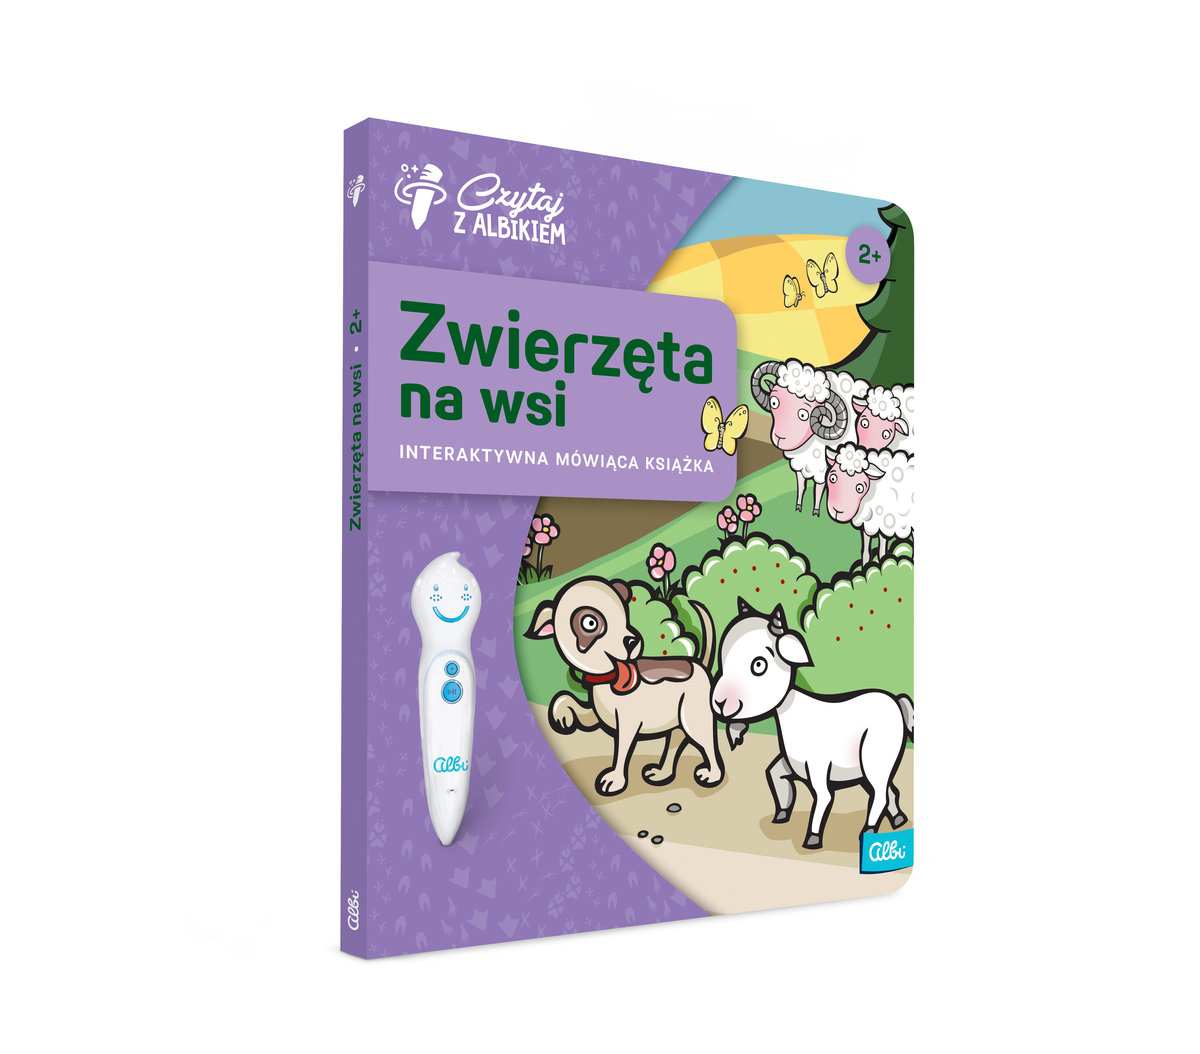 Фото - Інтерактивні іграшки Czytaj z Albikiem, Zwierzęta na wsi, interaktywna mówiąca książka